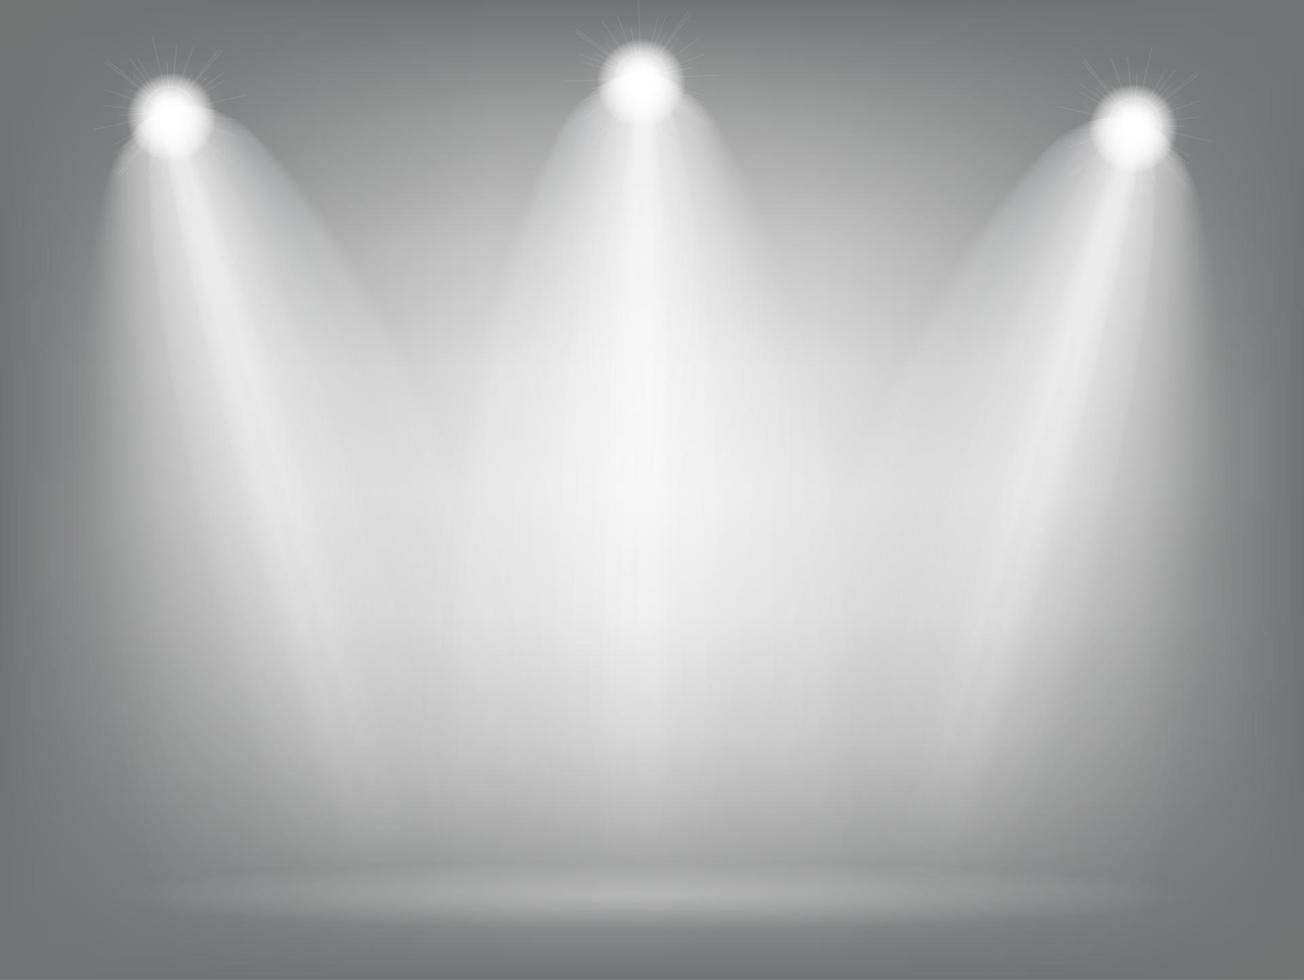 lampe d'éclairage réaliste de projecteurs lumineux avec des effets  d'éclairage de projecteurs avec fond transparent. illustration vectorielle  2754880 Art vectoriel chez Vecteezy